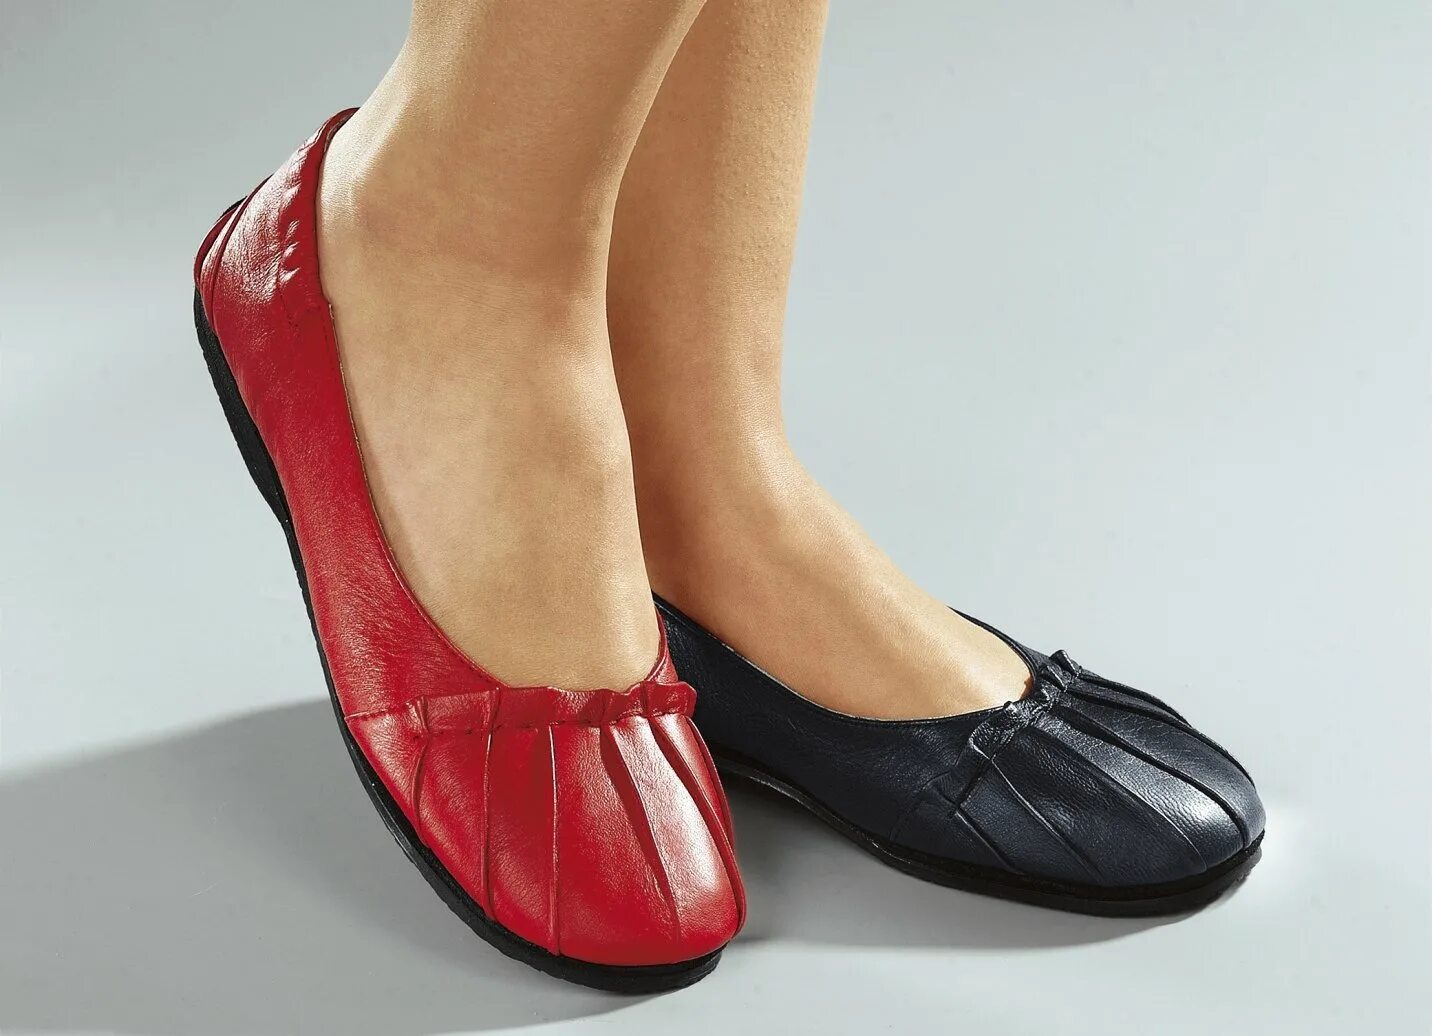 Купить недорогие туфли москва. Туфли женские. Женская обувь больших размеров. Обувь для широкой стопы женская. Туфли на широкую ногу.